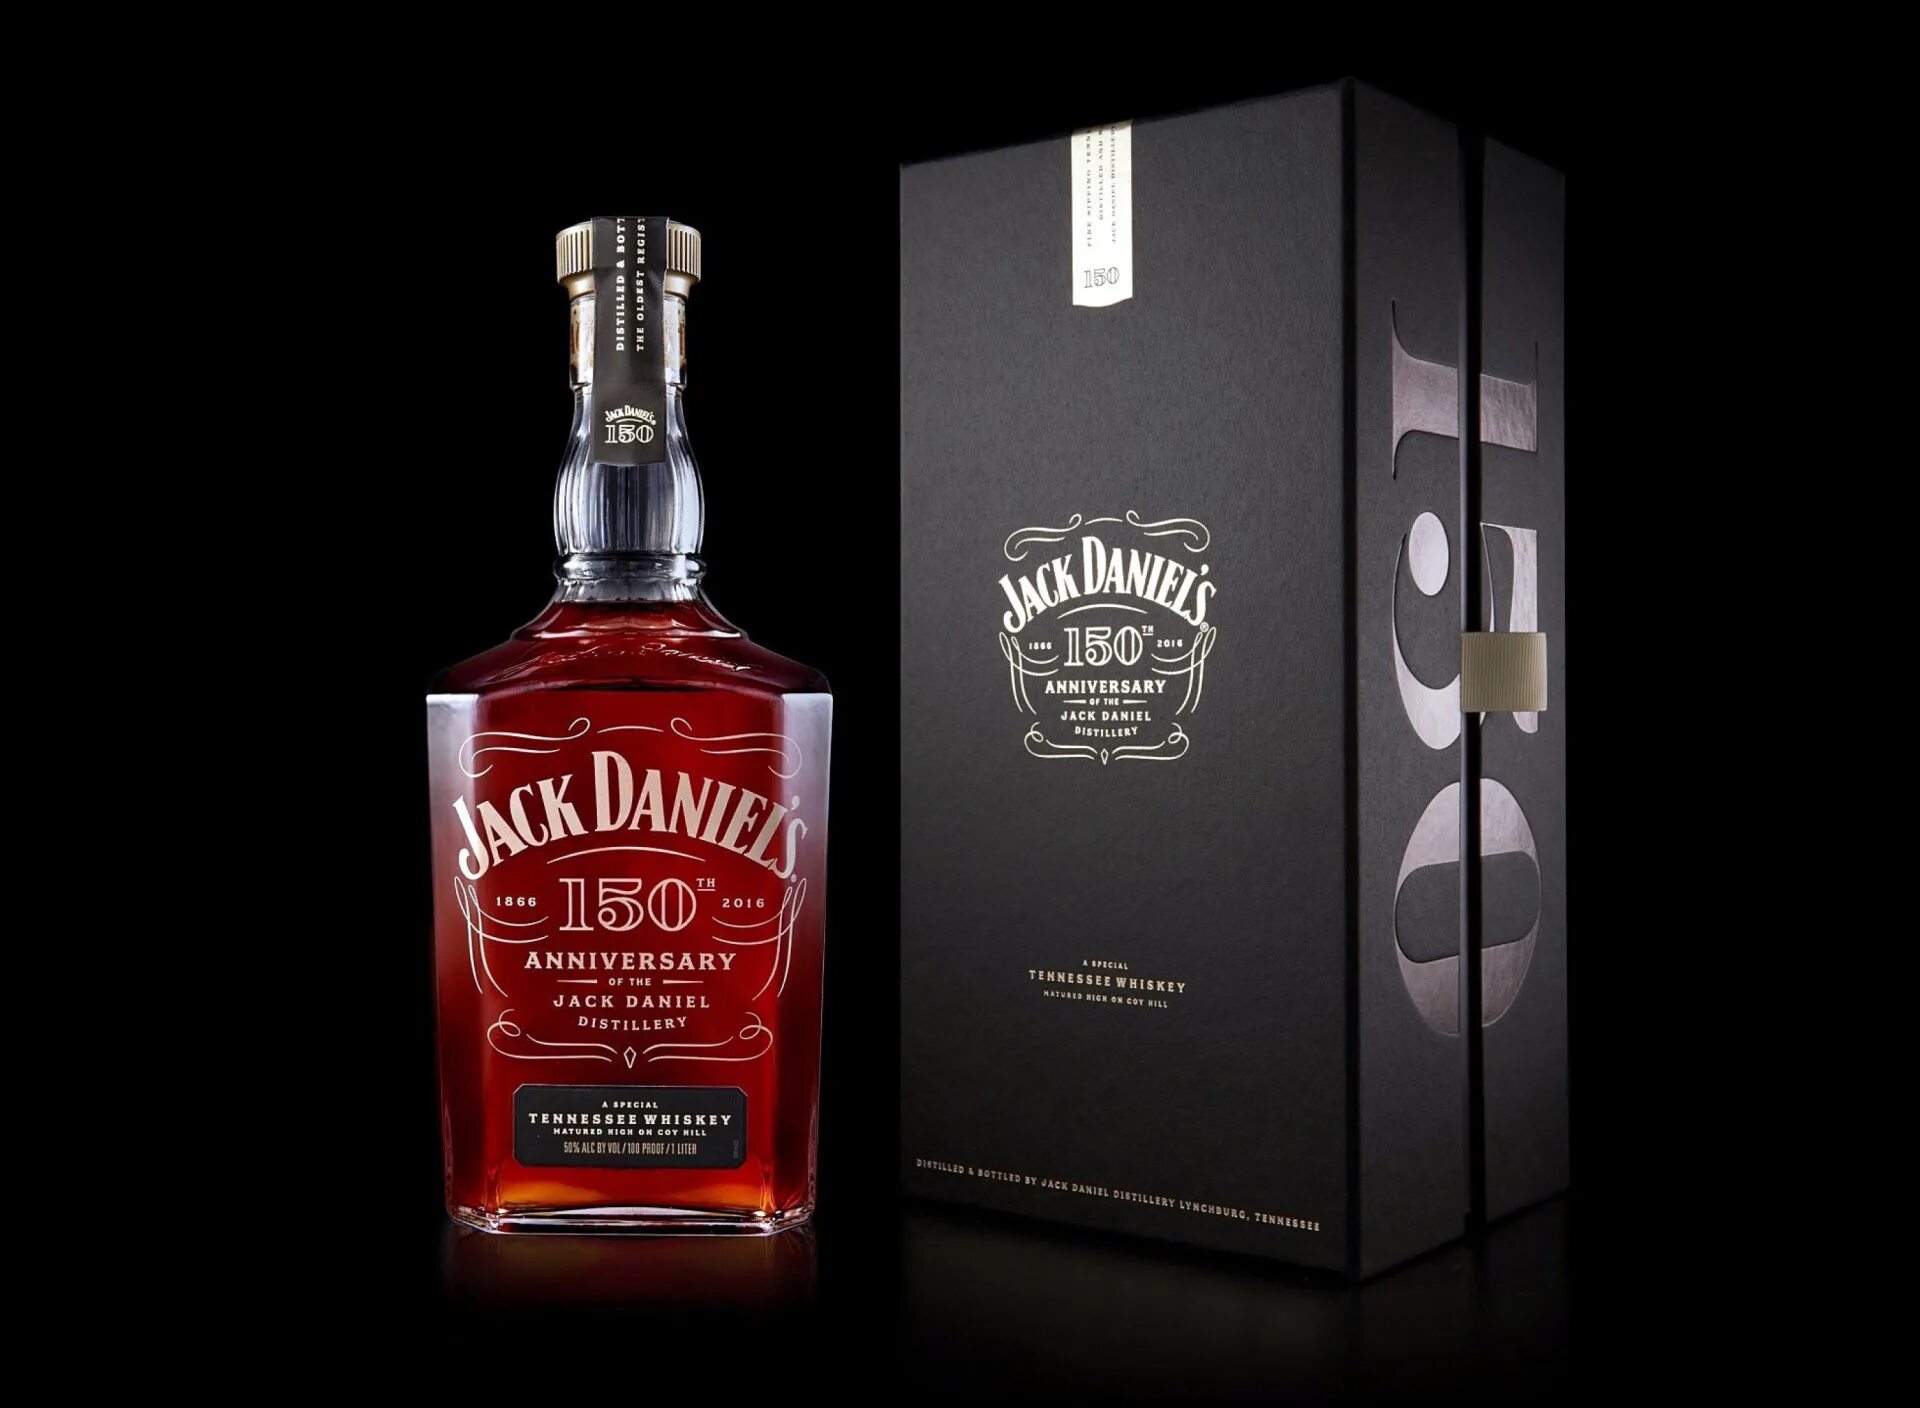 Джек дэниэлс это. Jack Daniel’s 150th Anniversary, 50%. Виски Джек Дэниэлс премиум. Джек Дэниэлс Бурбон. Виски Джек Дэниэлс 150.